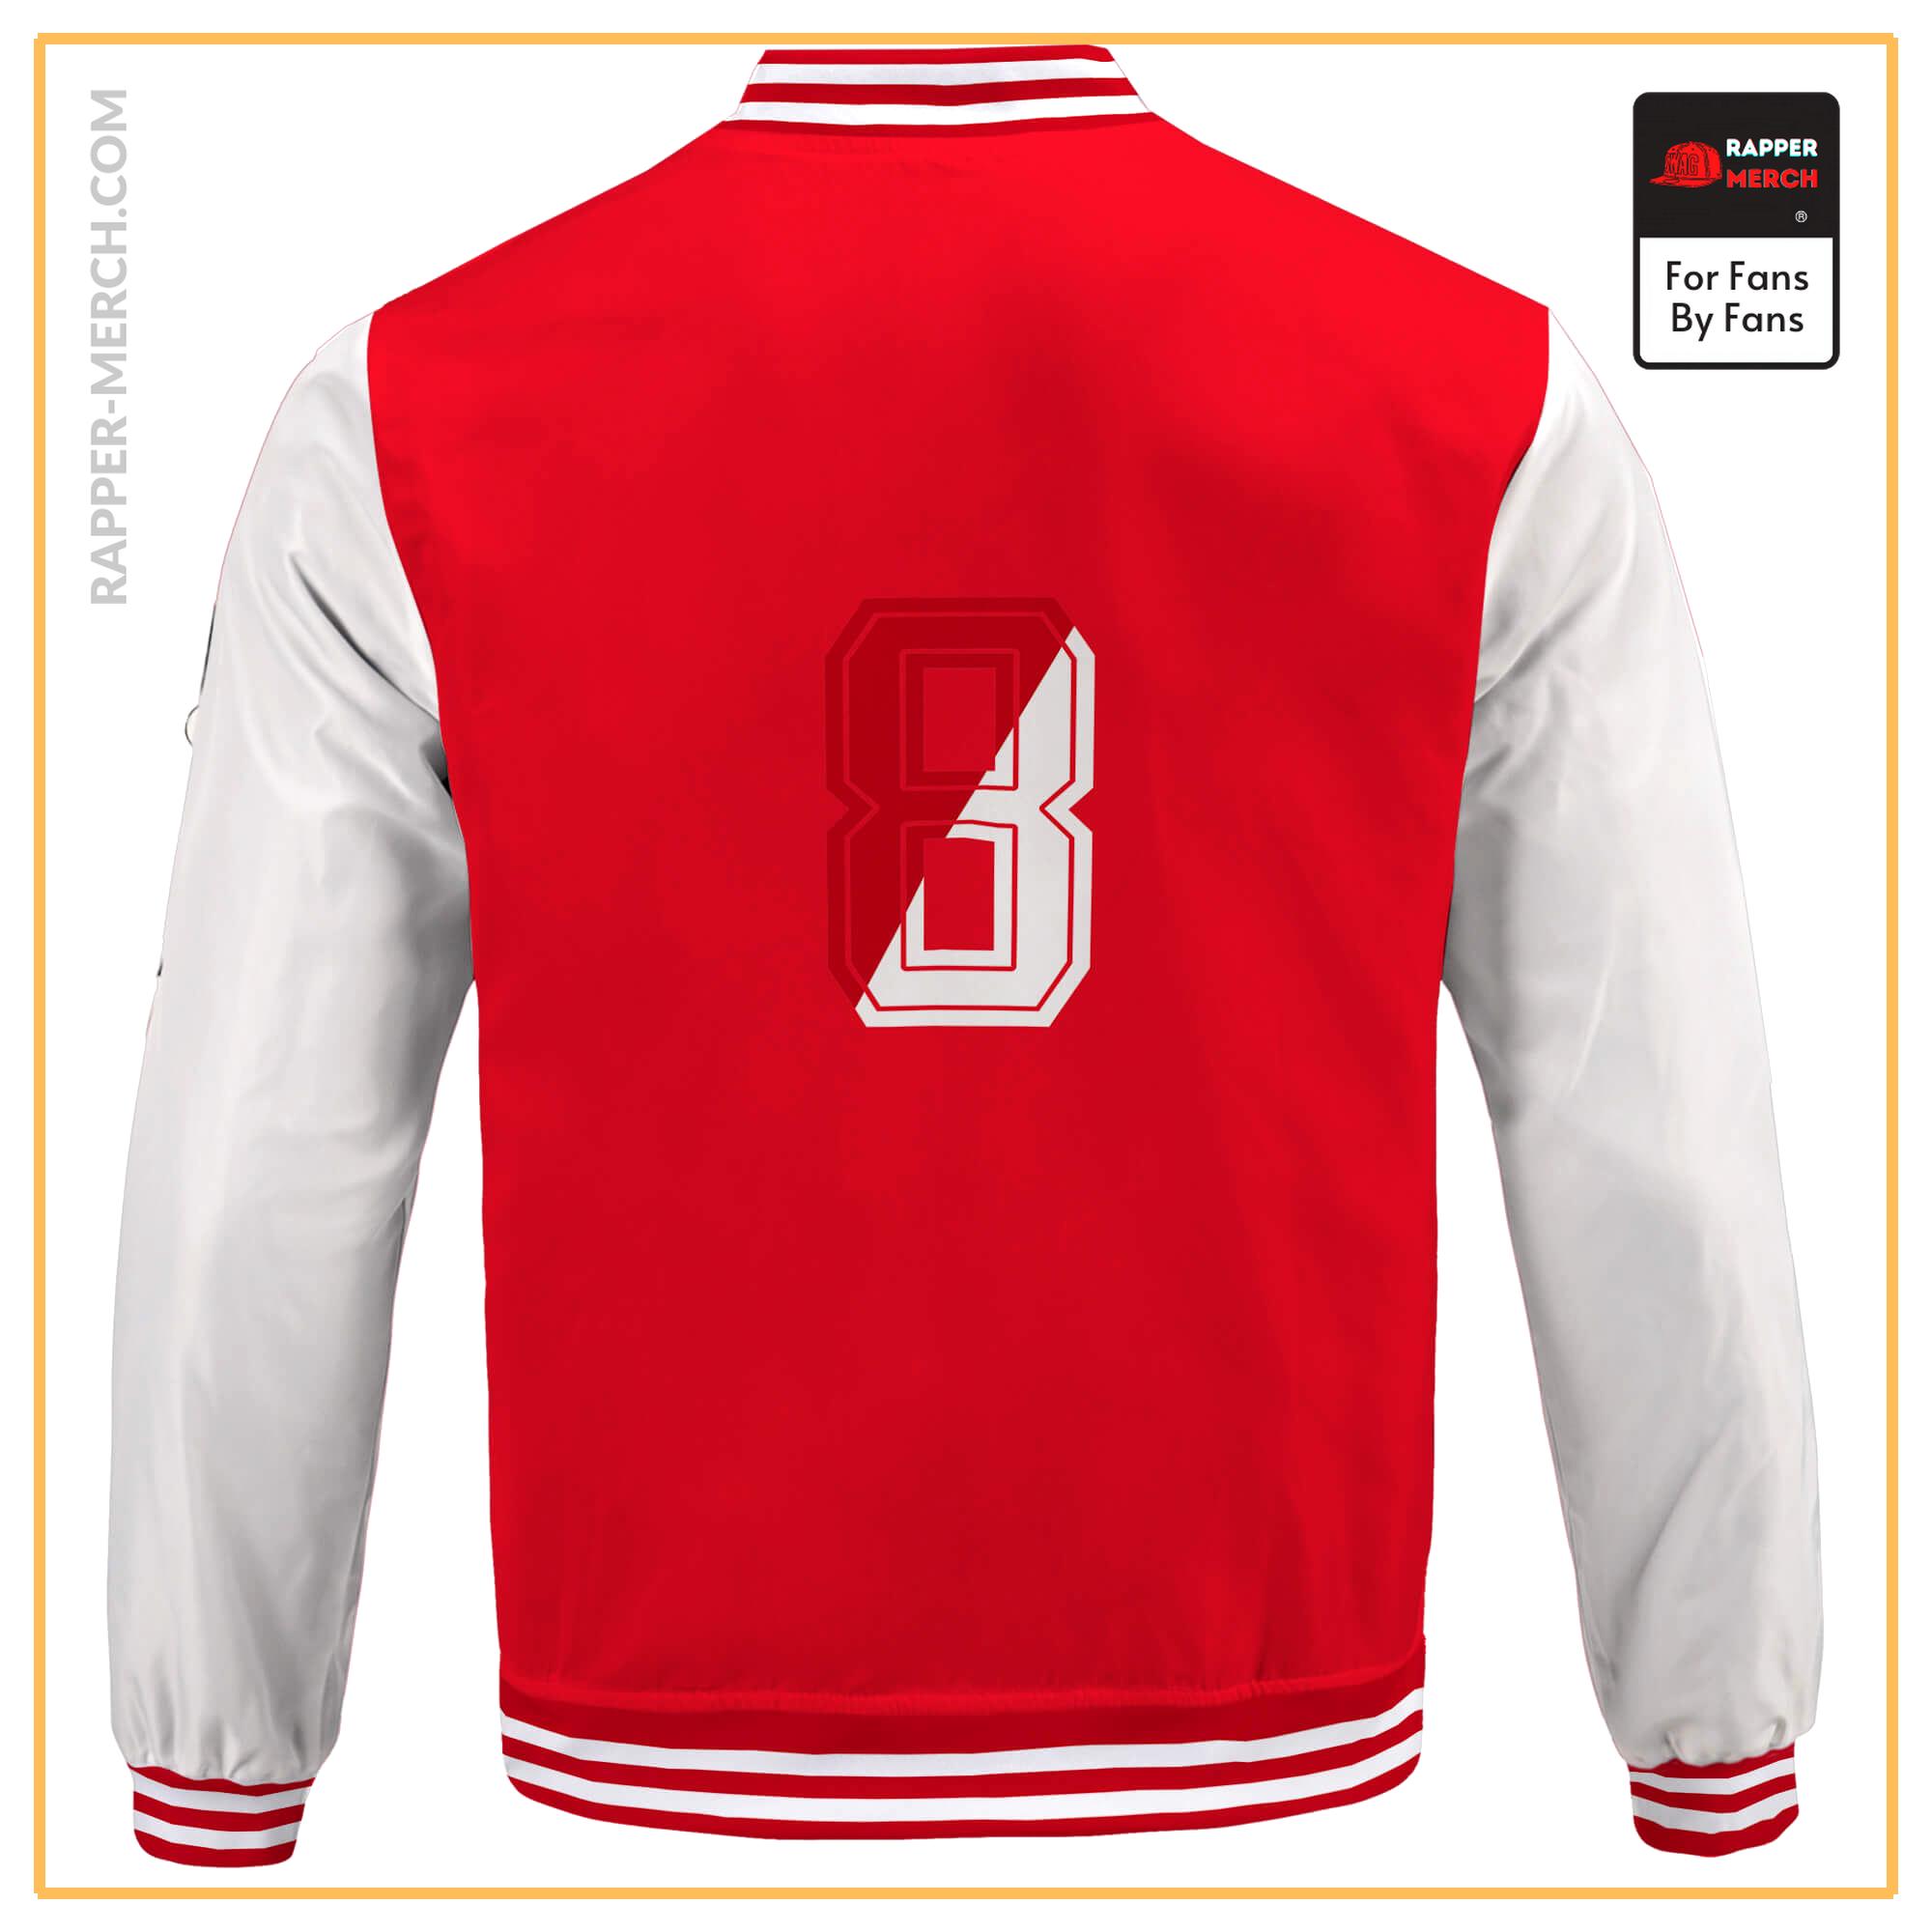 Eminem Shady Limited 8 Mile Cool Red & White Varsity Jacket RM0310